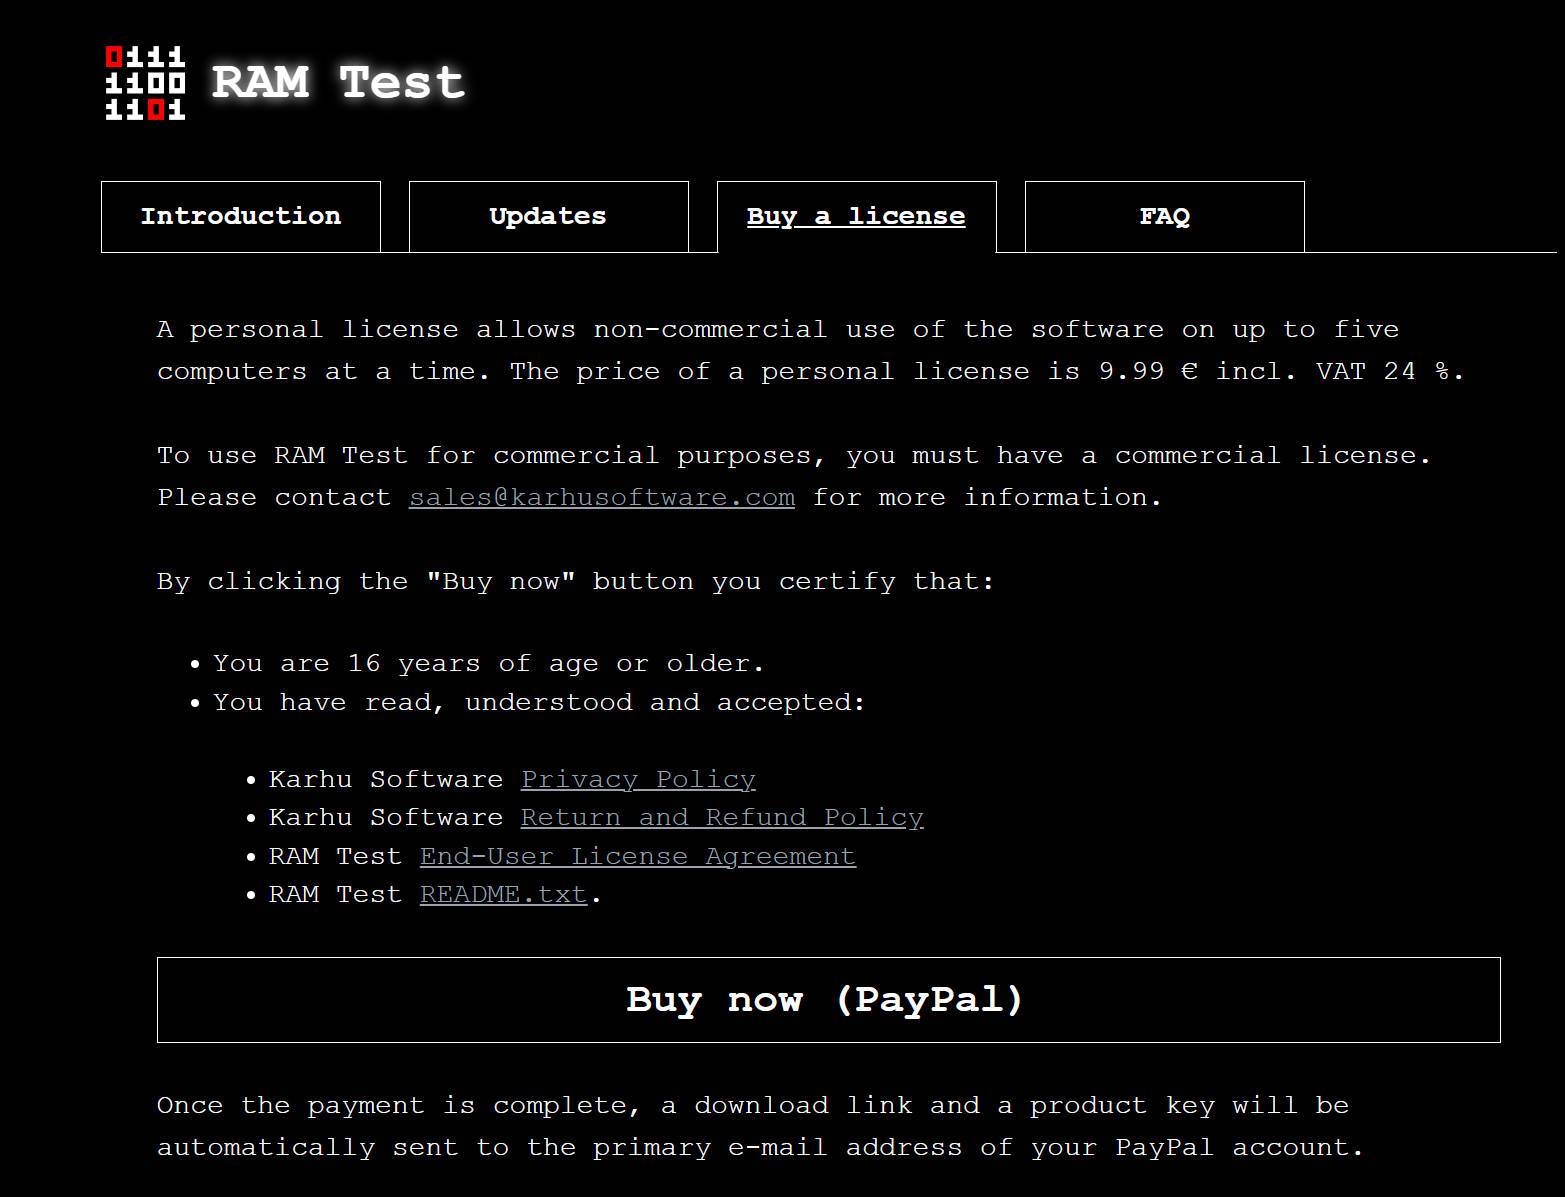 内存稳定性测试软件KARHU RAM TEST即将迎来重大更新